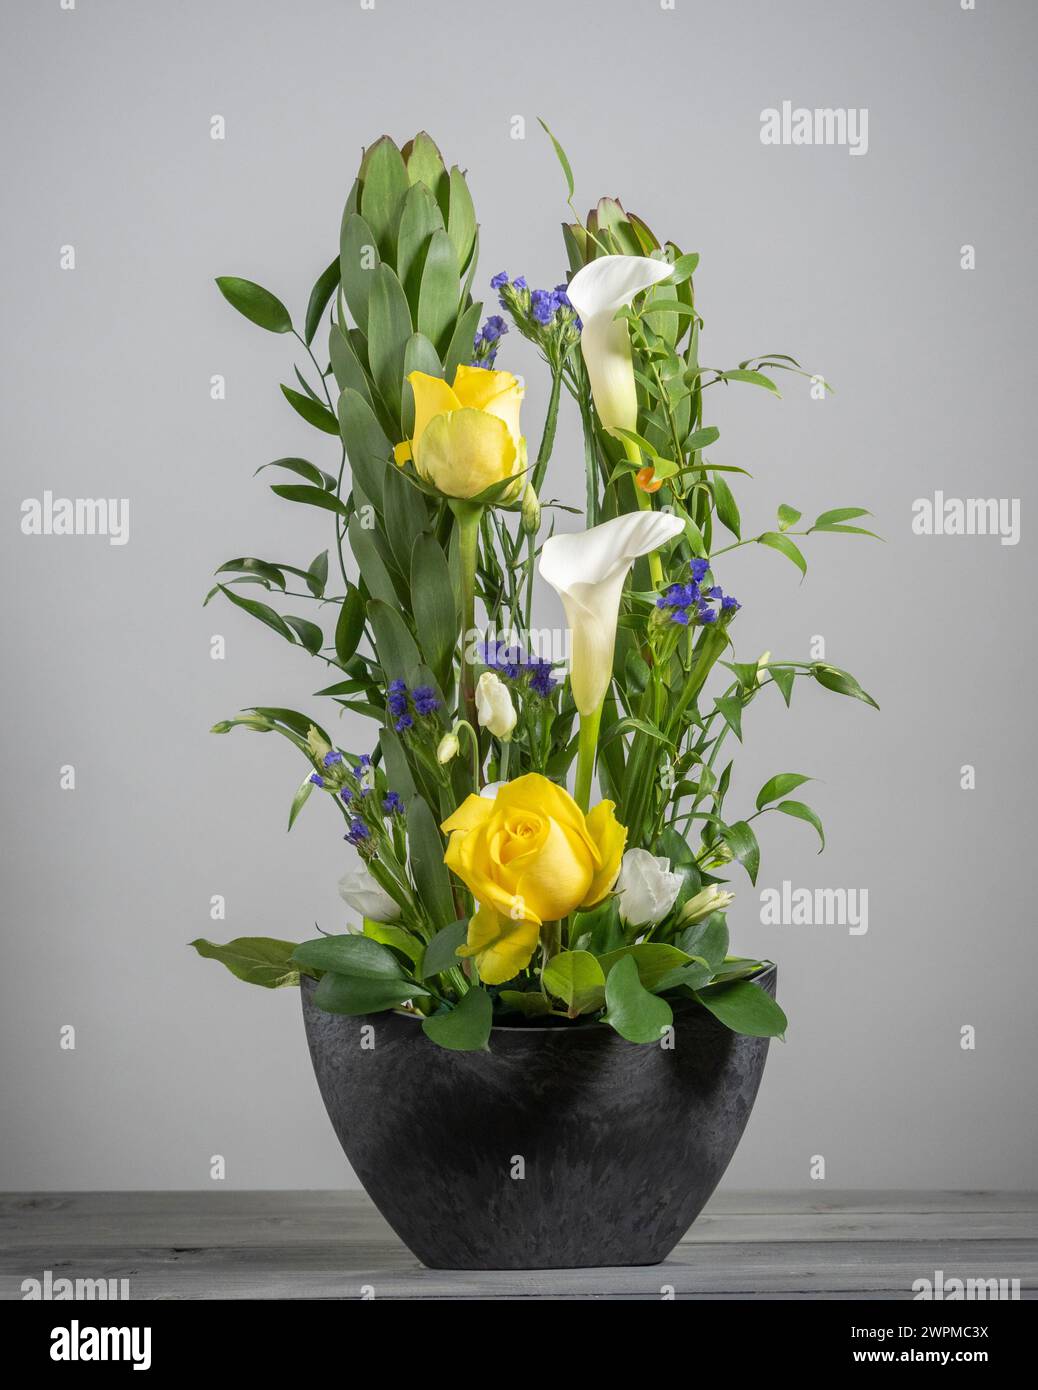 Composizione floreale di rose gialle, gigli di calla bianchi, statice viola e proteas verdi su sfondo grigio. Foto Stock